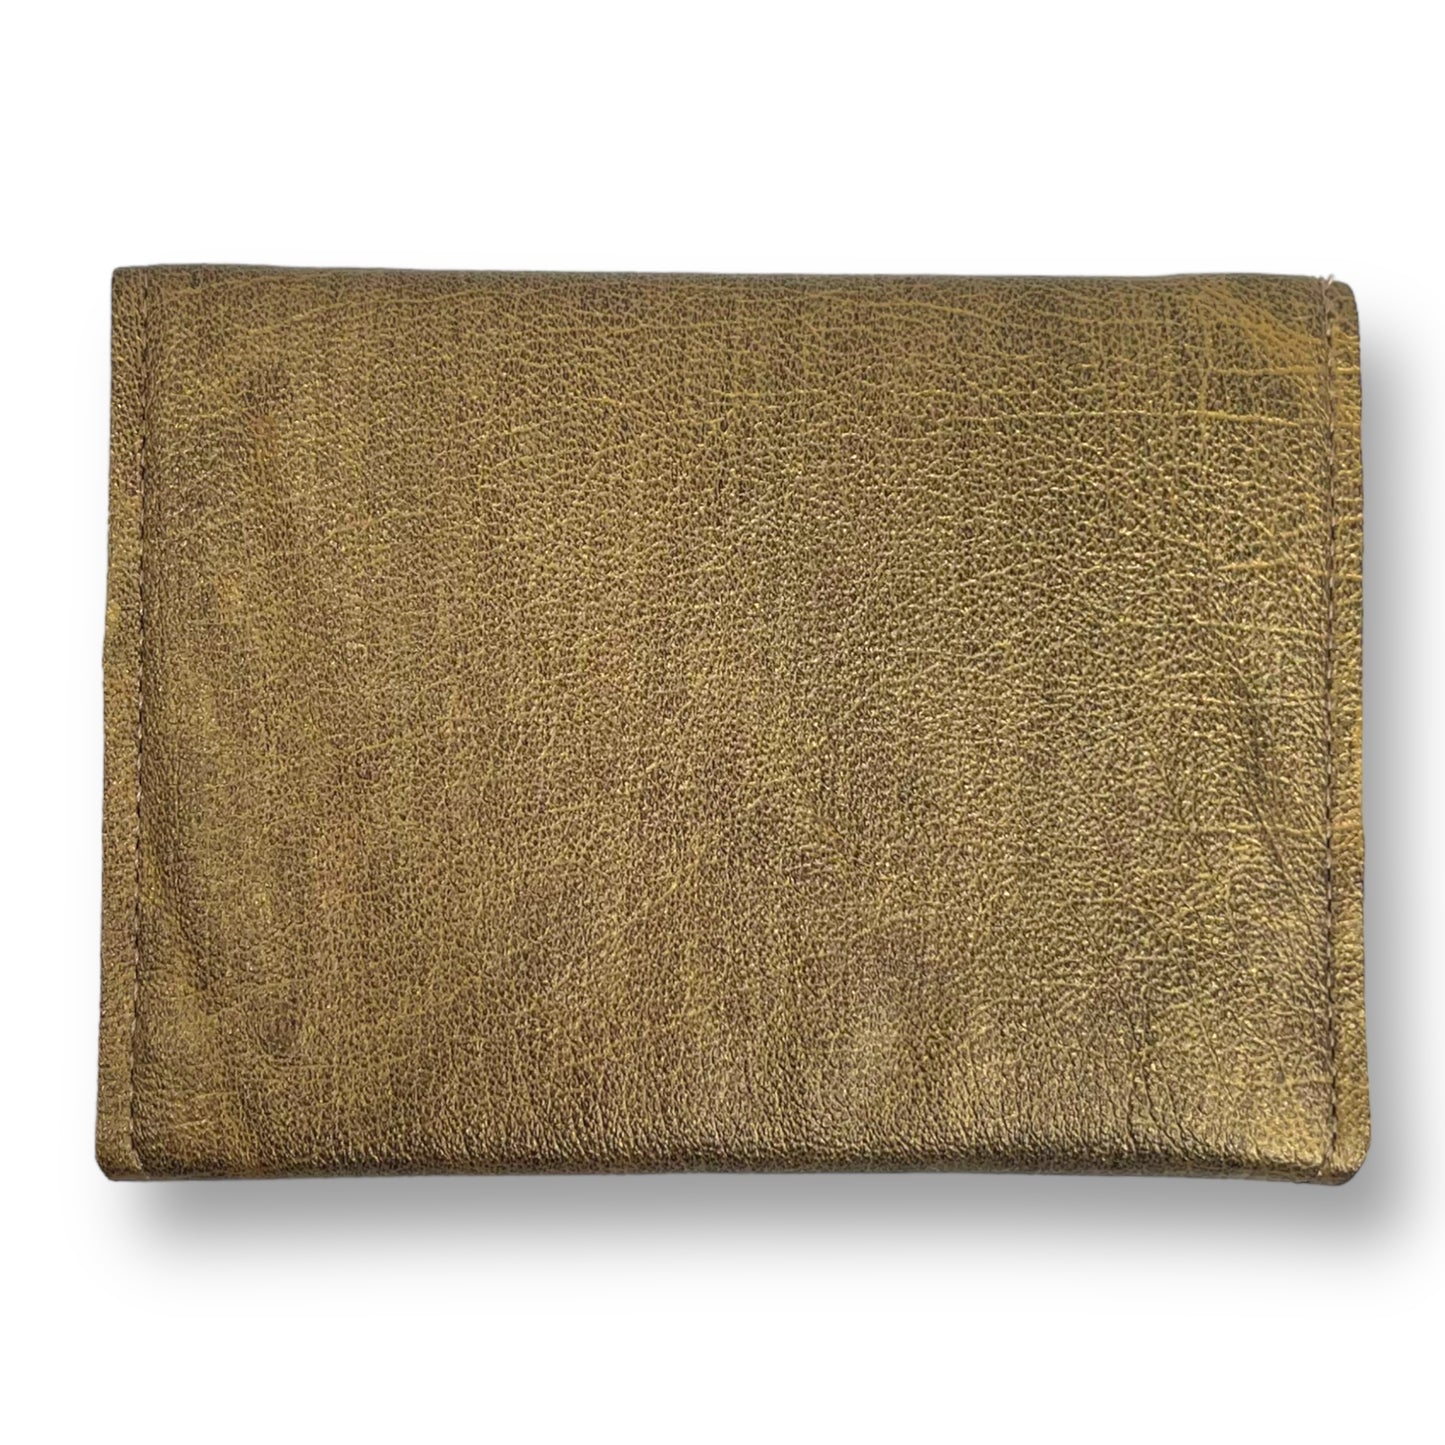 Gold & Blue Envelope Leather Wallet